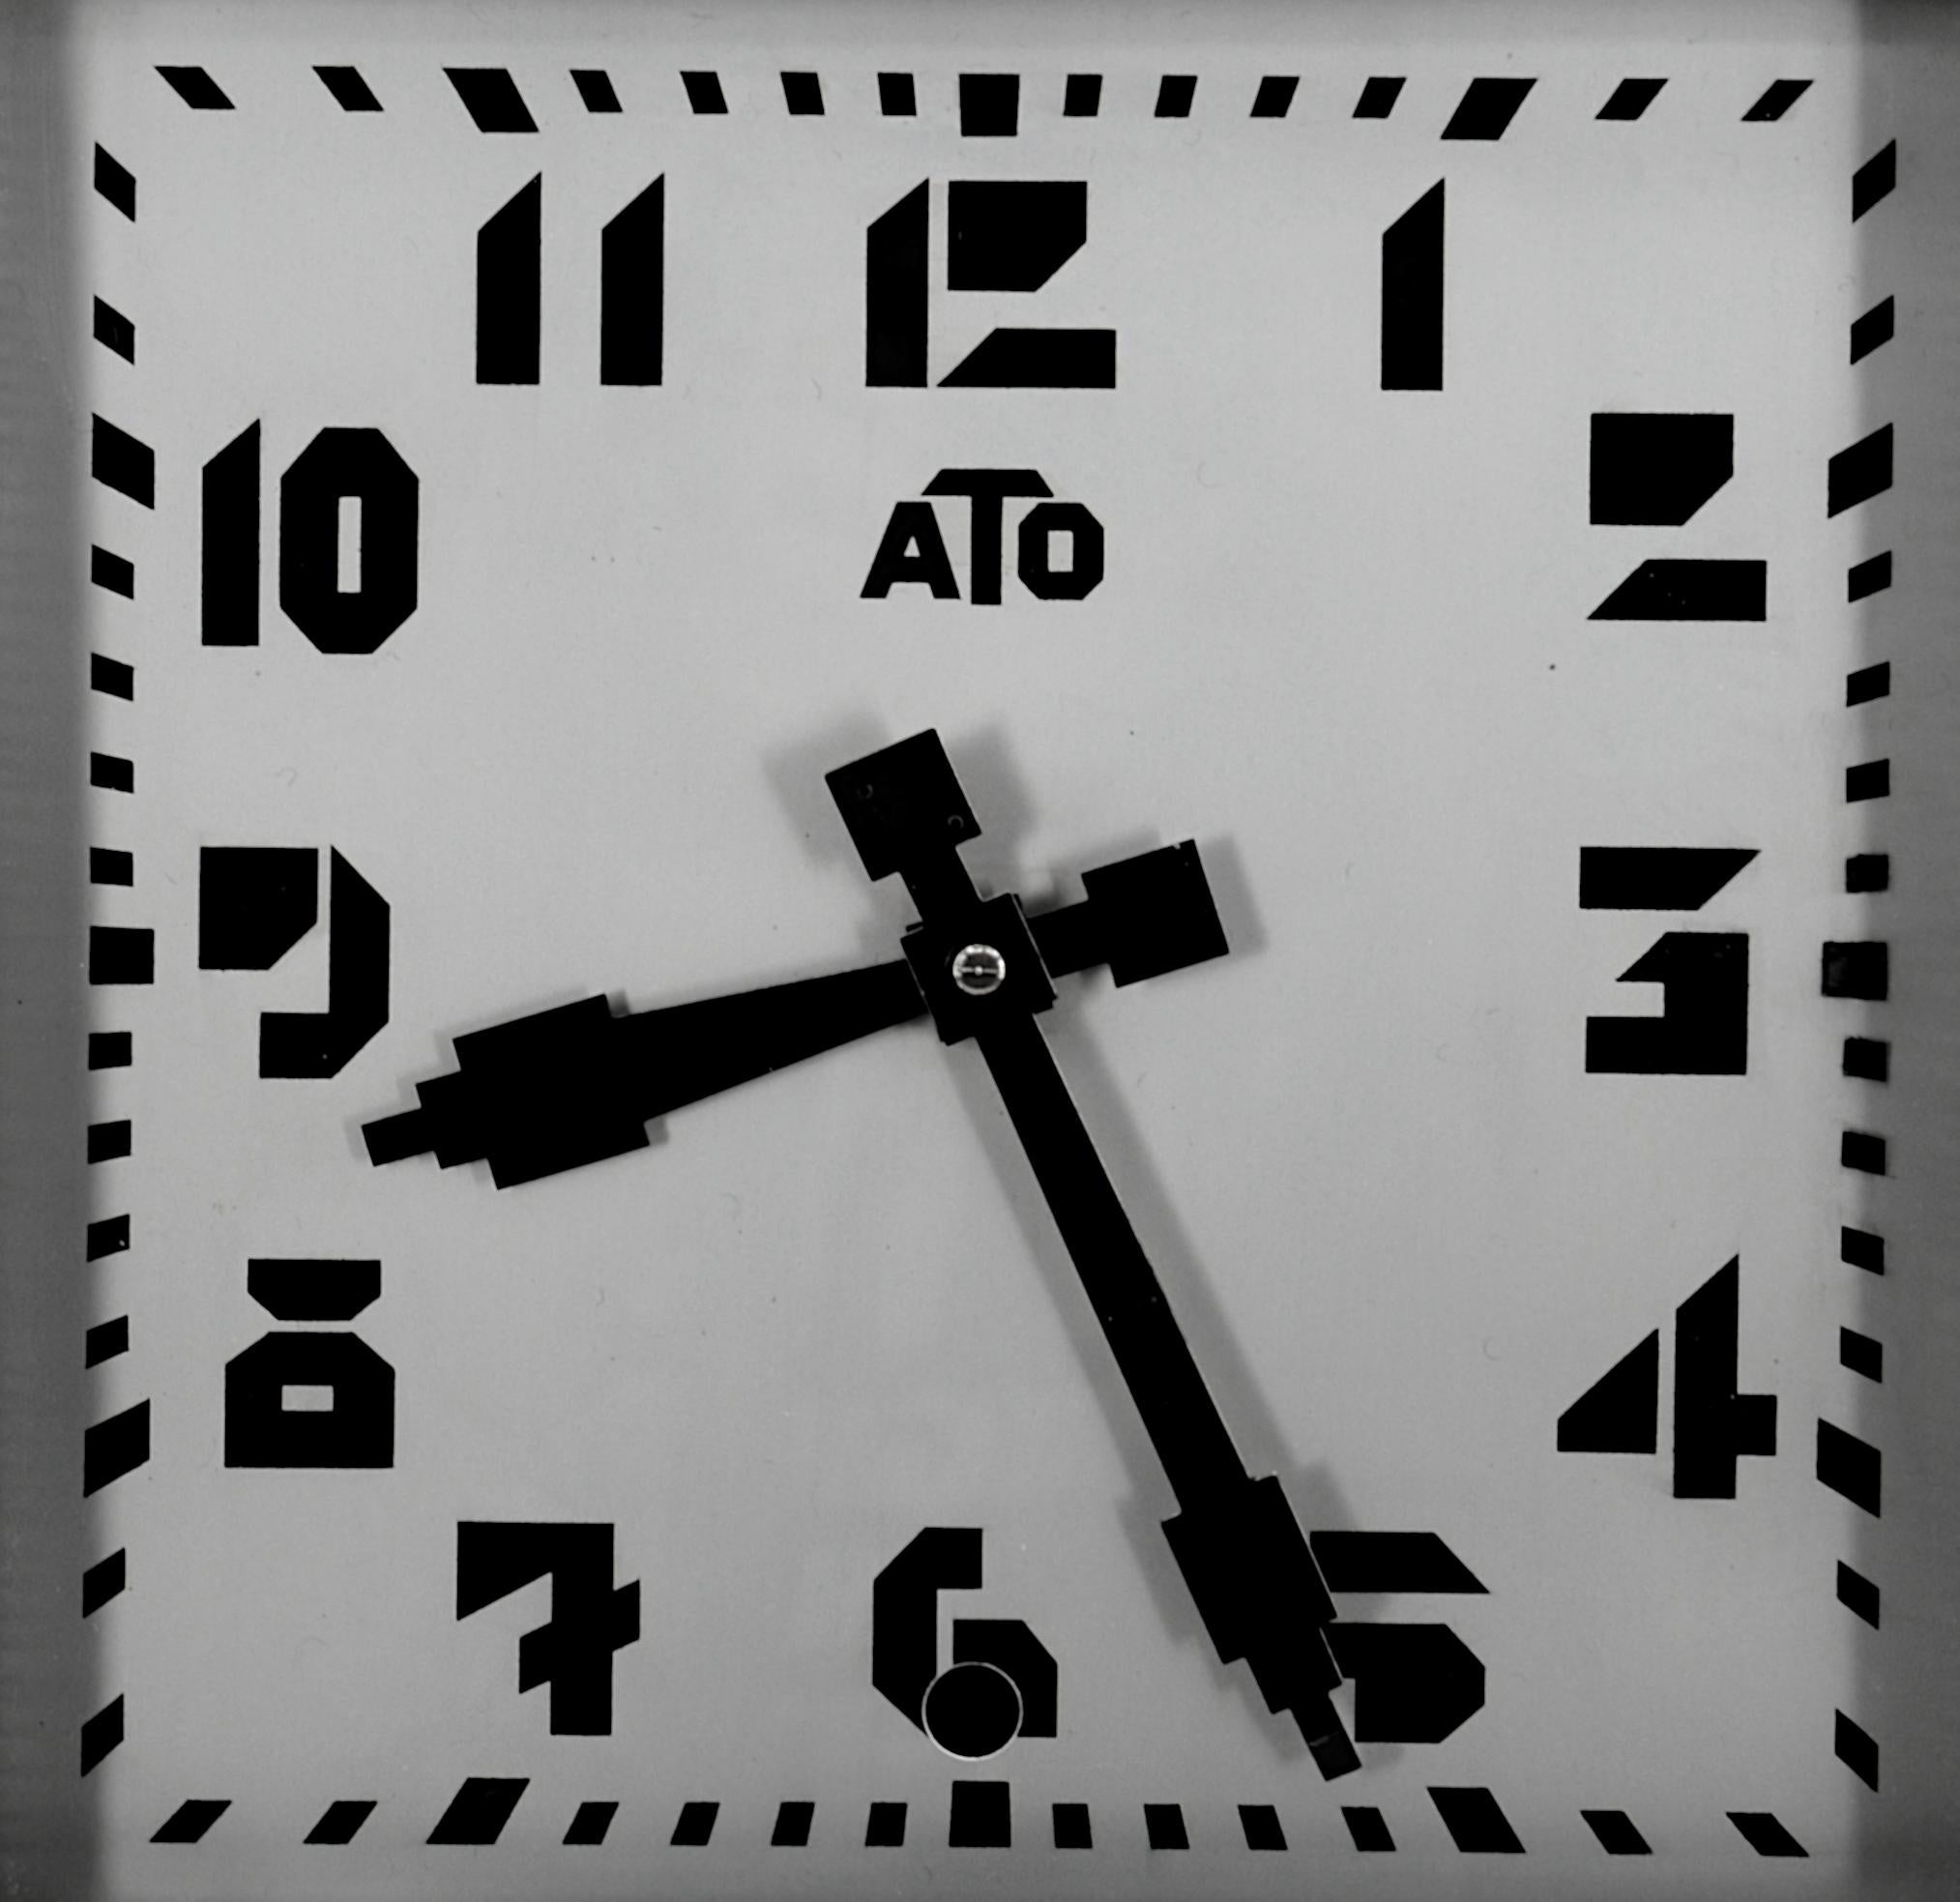 Horloge murale française Art Deco par ATO (Paris), France, vers 1930. Bois et métal. Le cadre est en bois et imite le métal. Vis de réglage externe d'origine. Dimensions : Hauteur 42 cm, largeur 42 cm, profondeur 7,5 cm. Marqué 